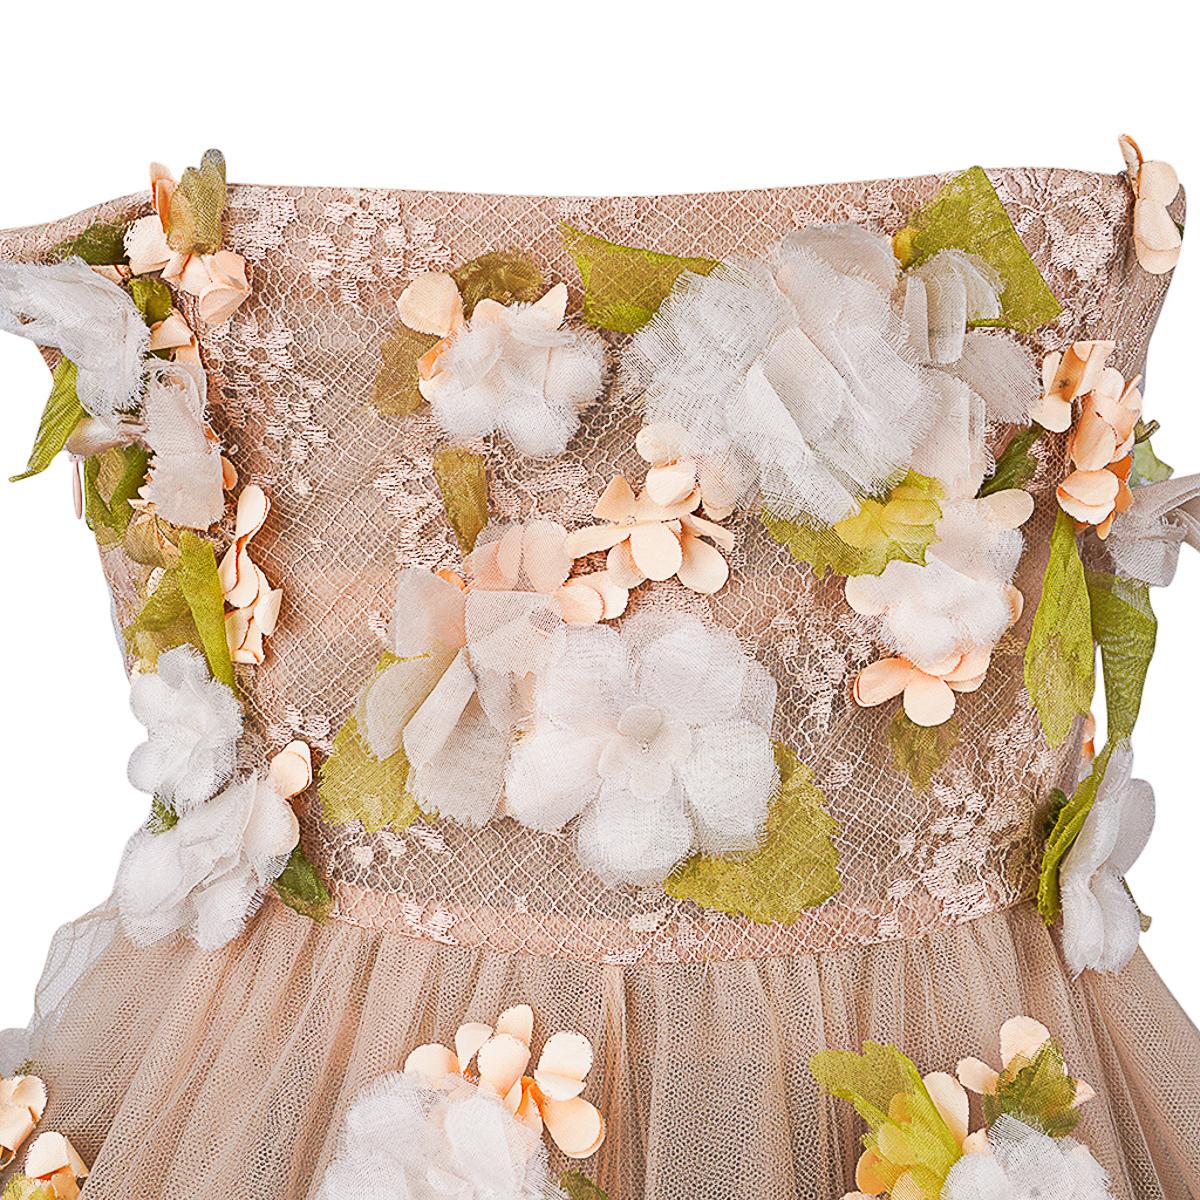 Valentino Trägerloses Empire-Kleid in Nude mit Blumenschmuck 1 von 2 Größe 0 4